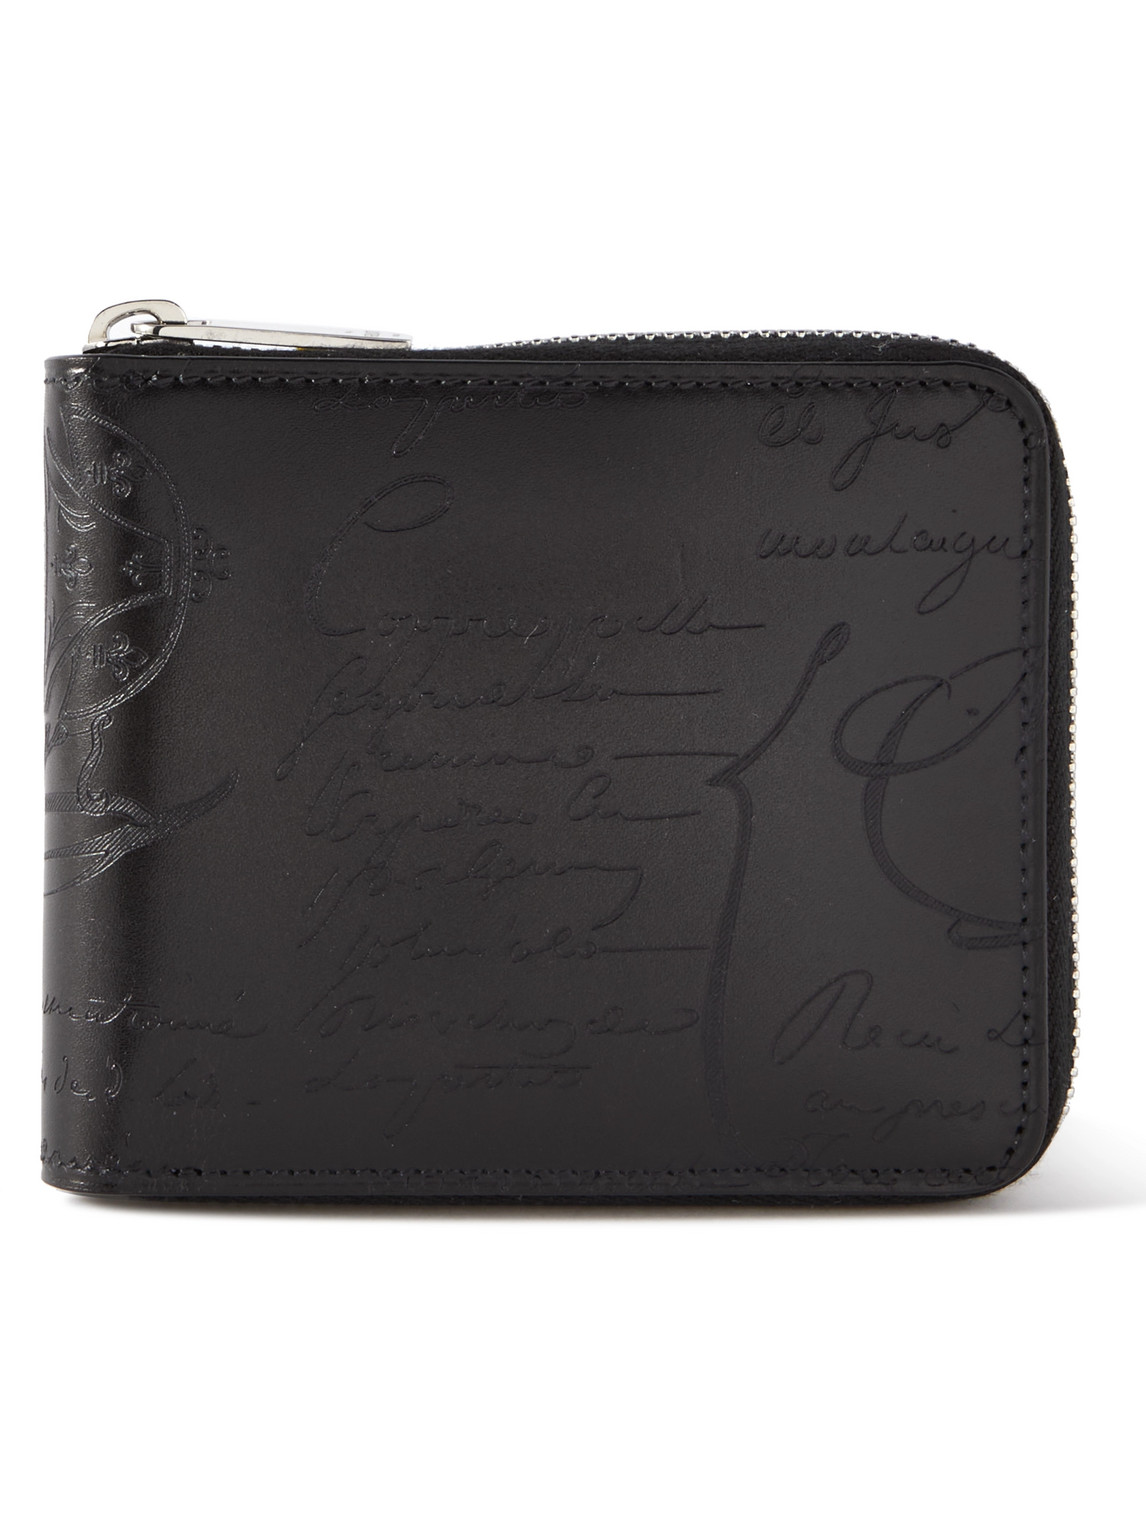 Berluti Scritto Venezia Leather Zip-around Wallet In Black